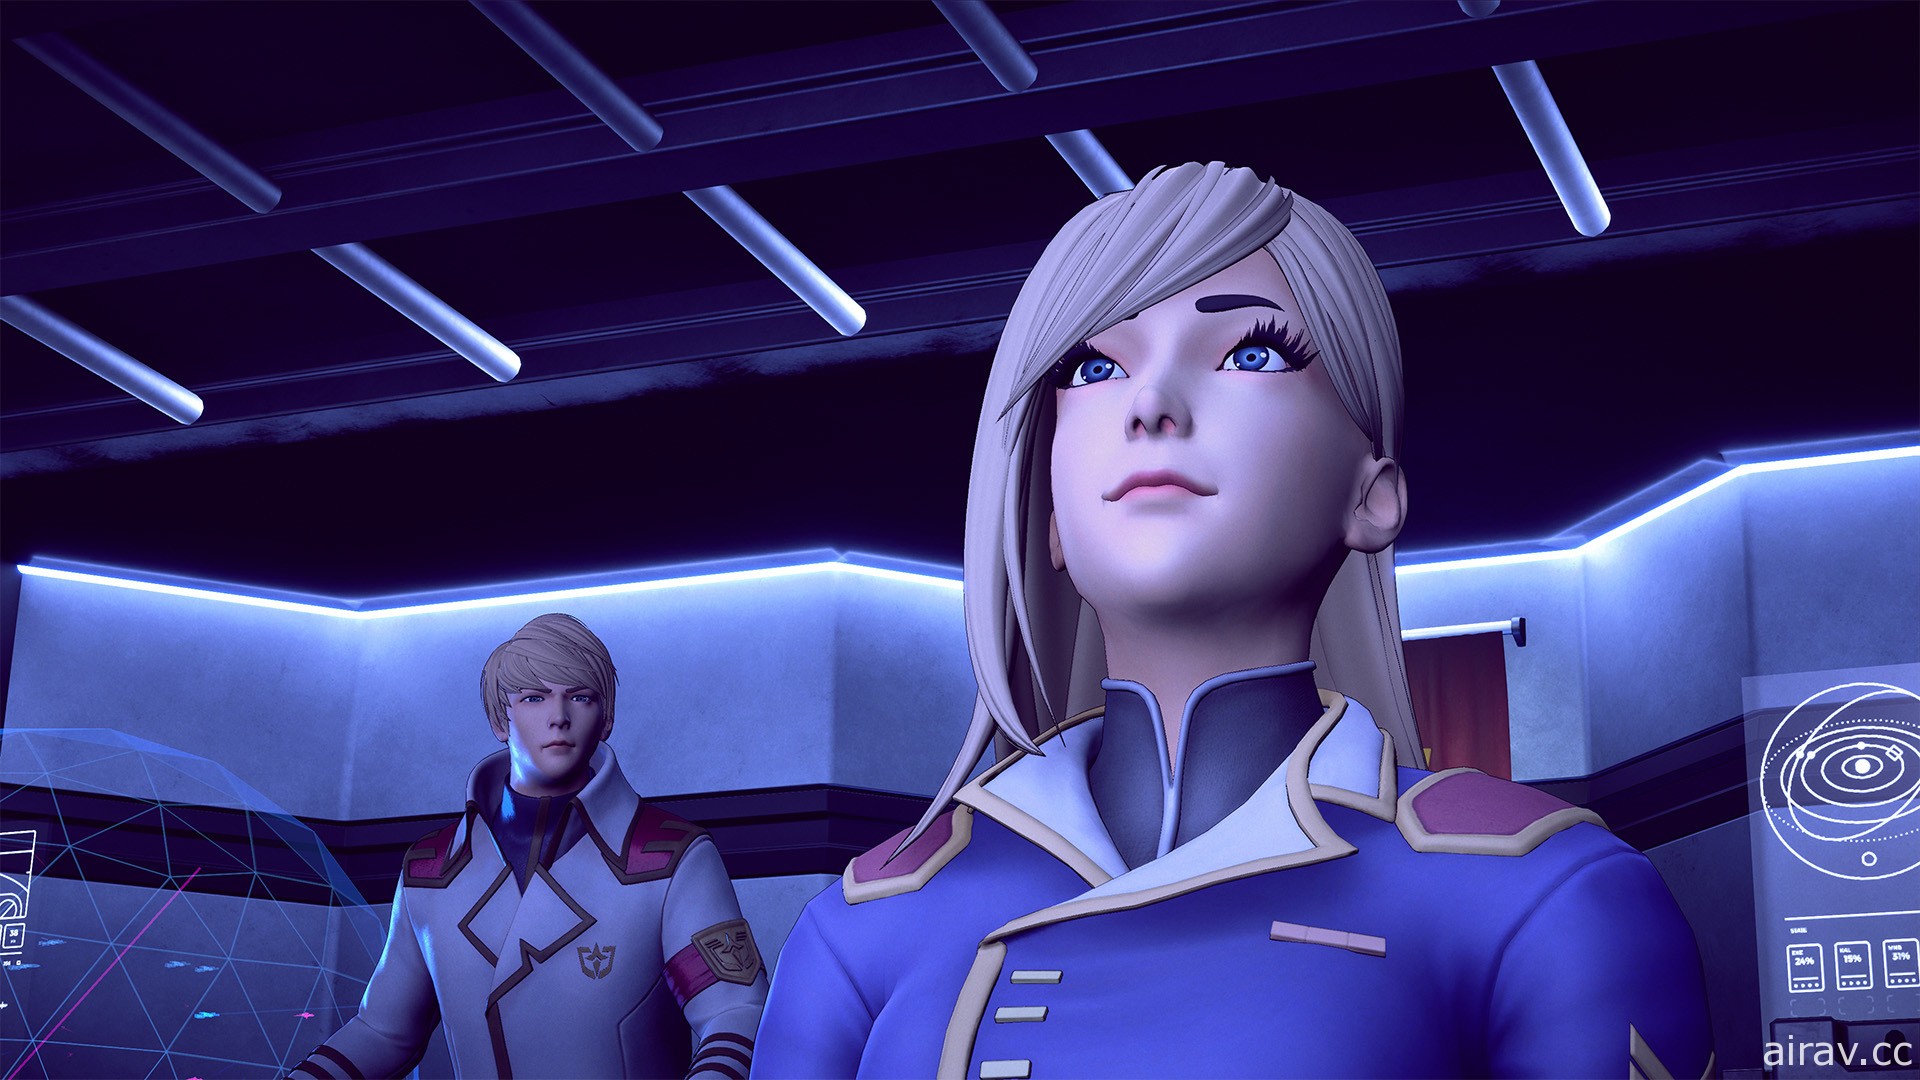 科幻線上即時戰略遊戲《無限艦隊》公開新預告影片「全面反擊」 揭露主要遊玩要素